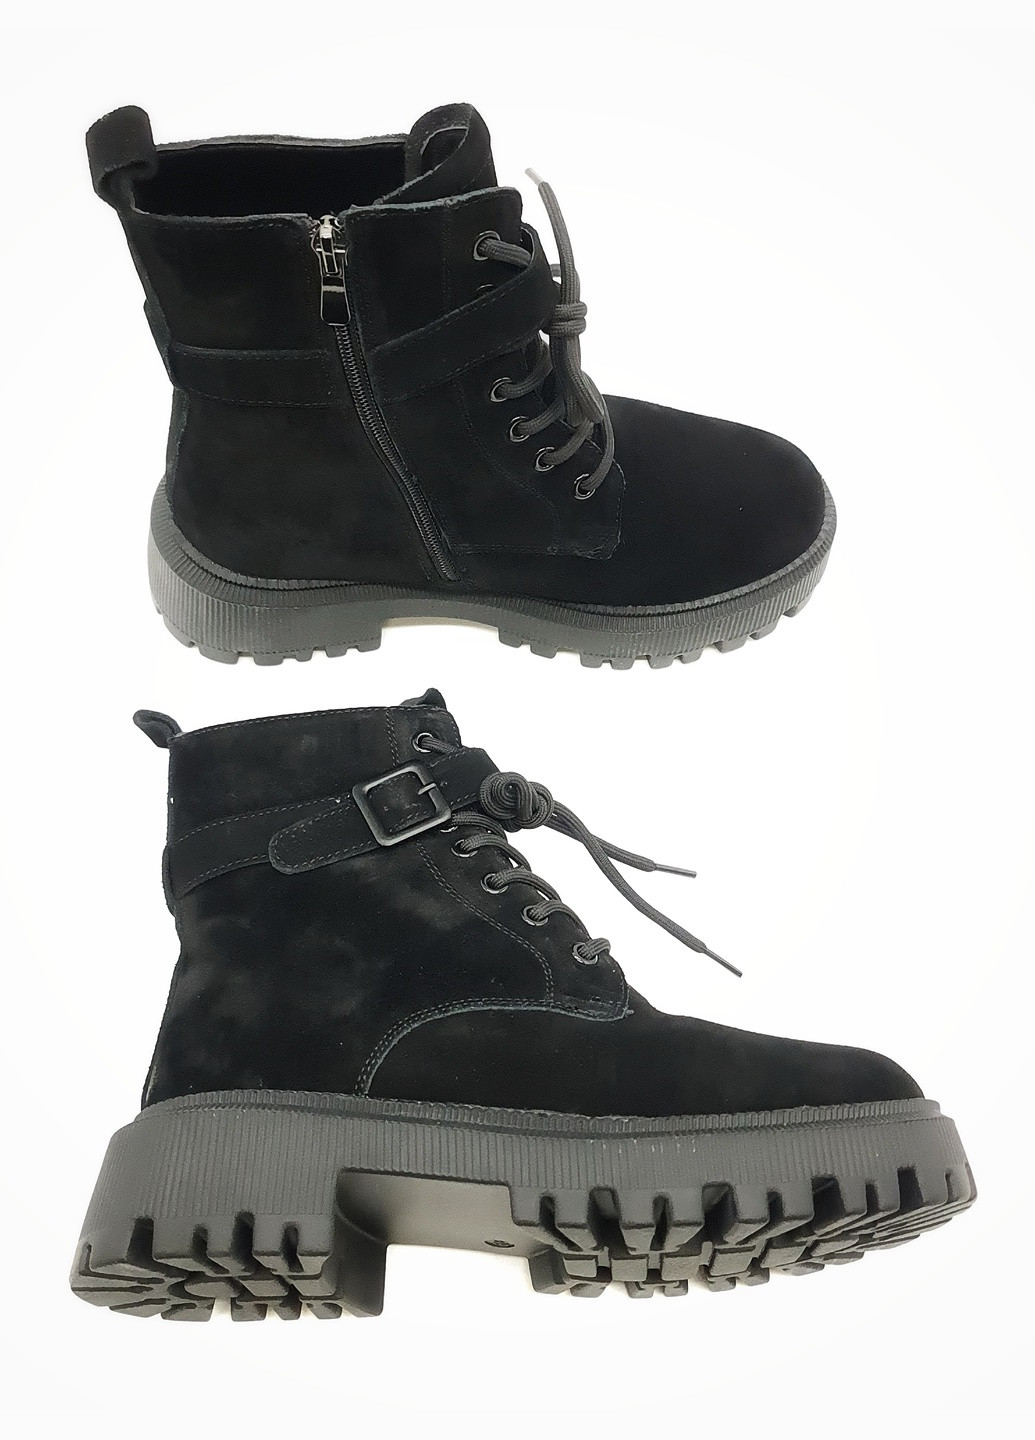 Осенние женские ботинки зимние черные замшевые ii-11-13 23 см(р) It is